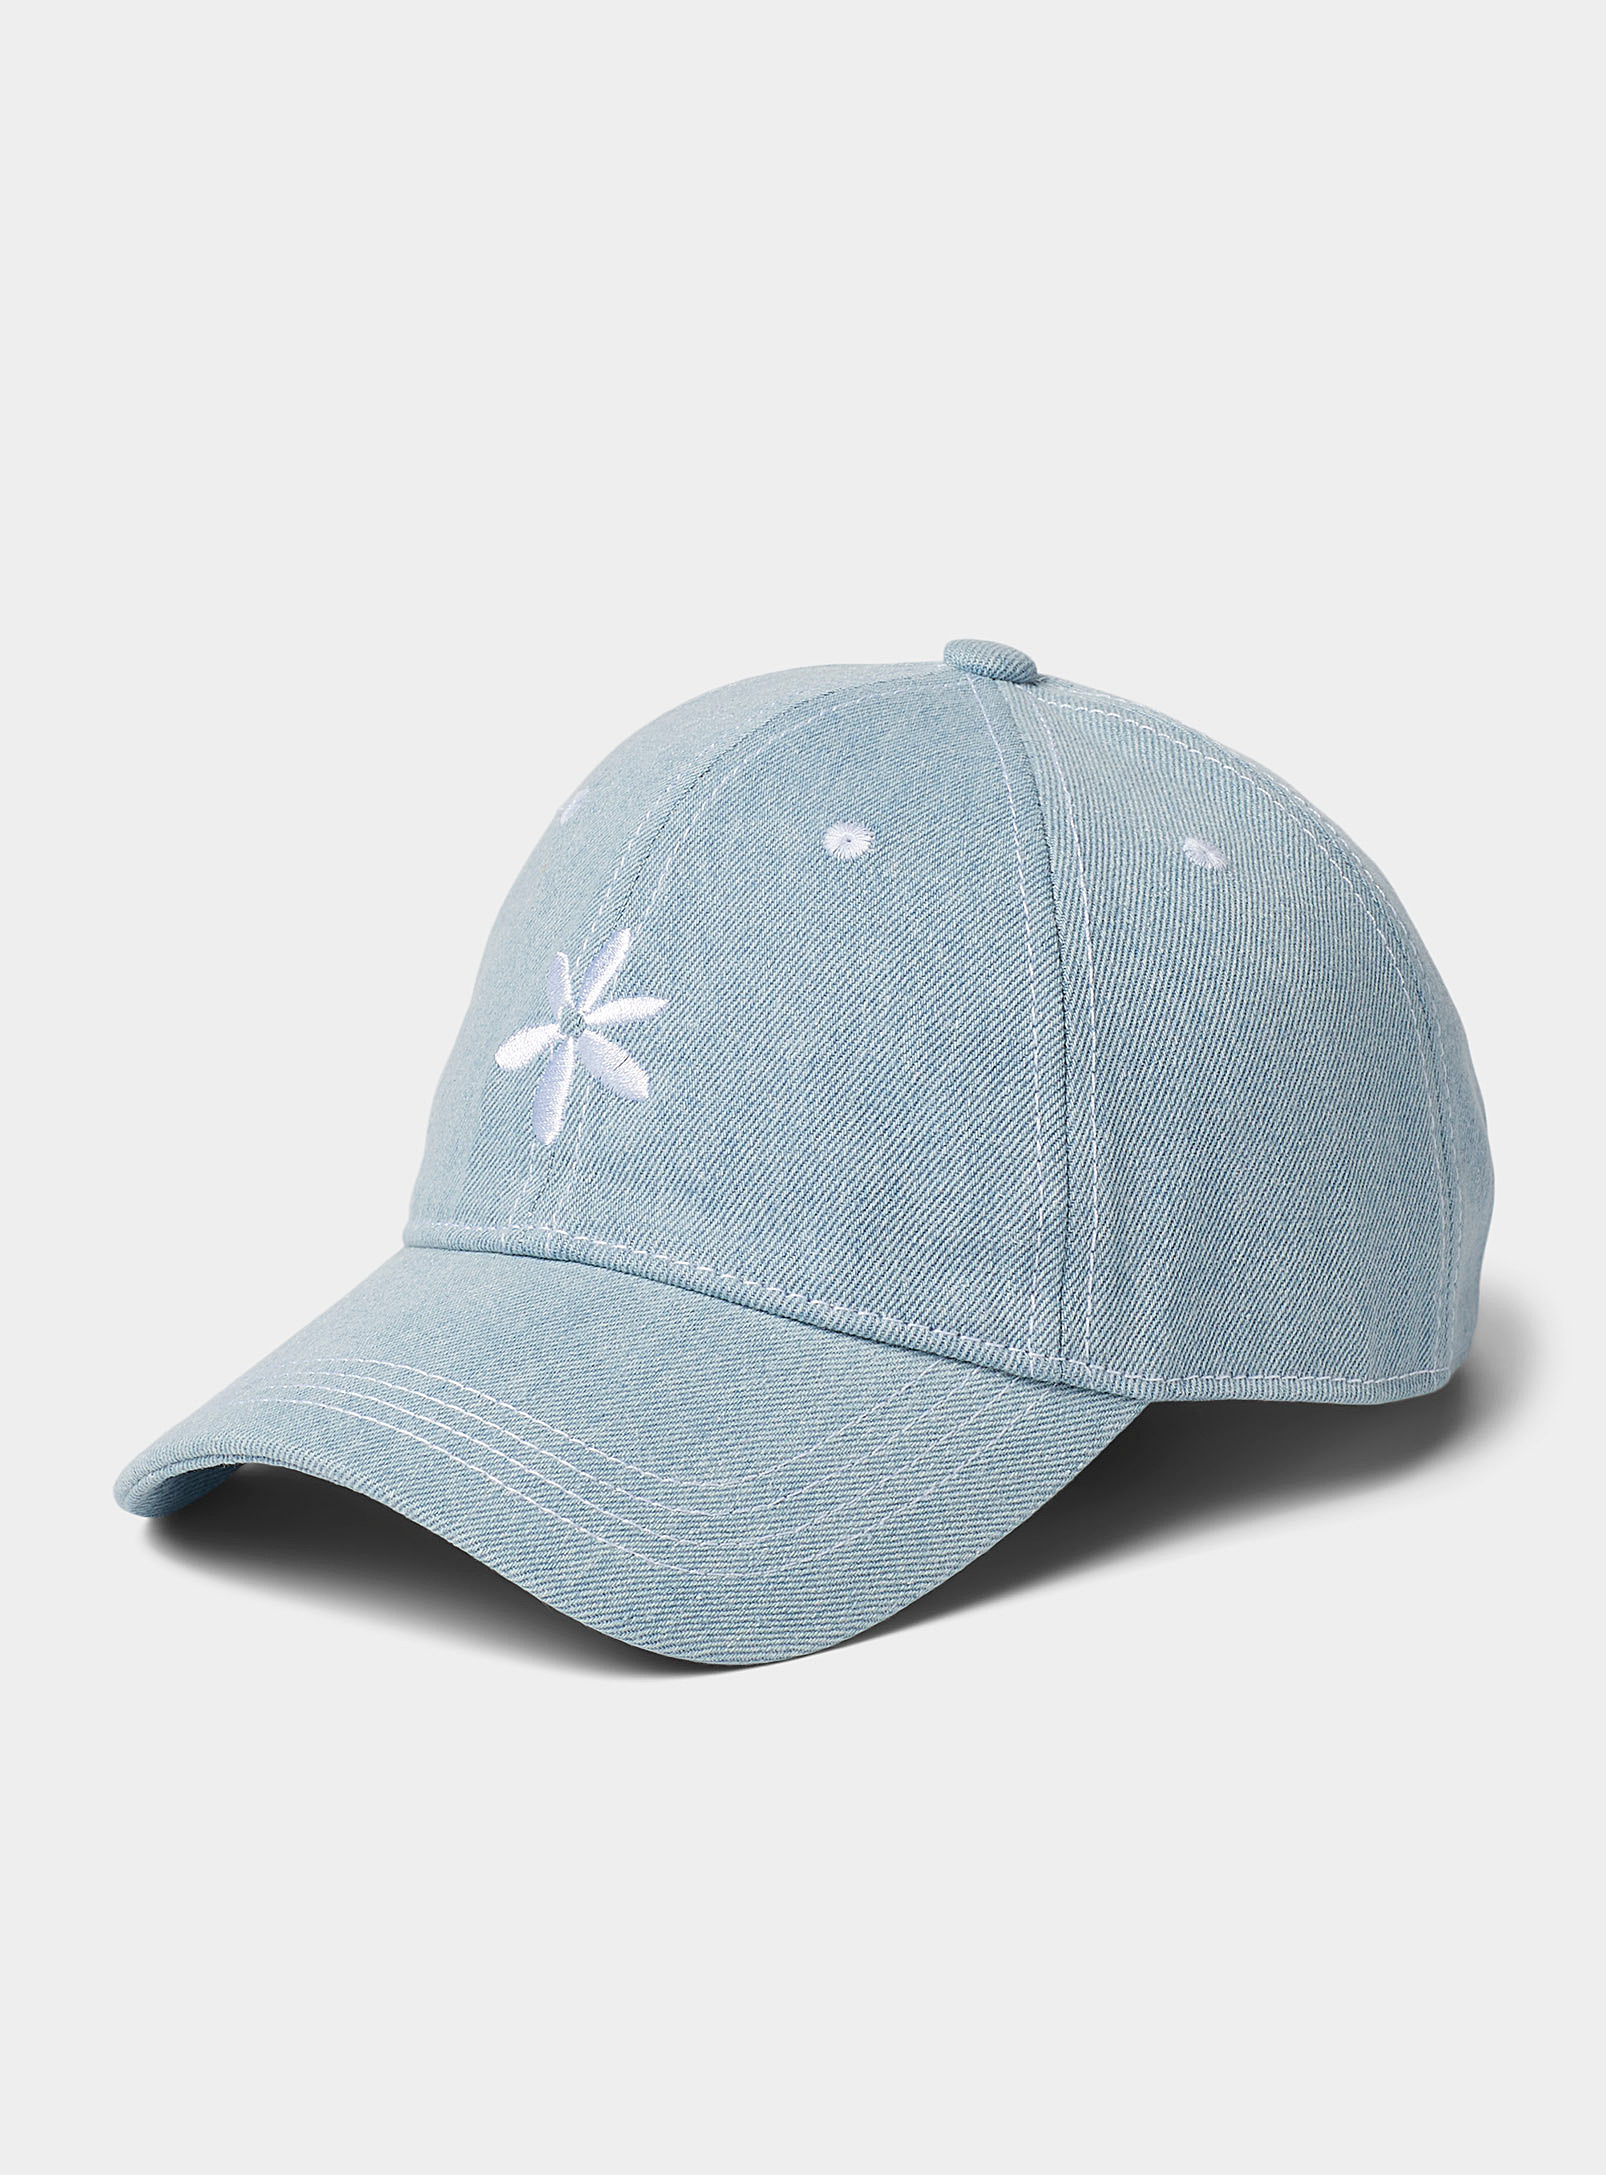 Simons - Women's Embroidered flower denim baseball cap